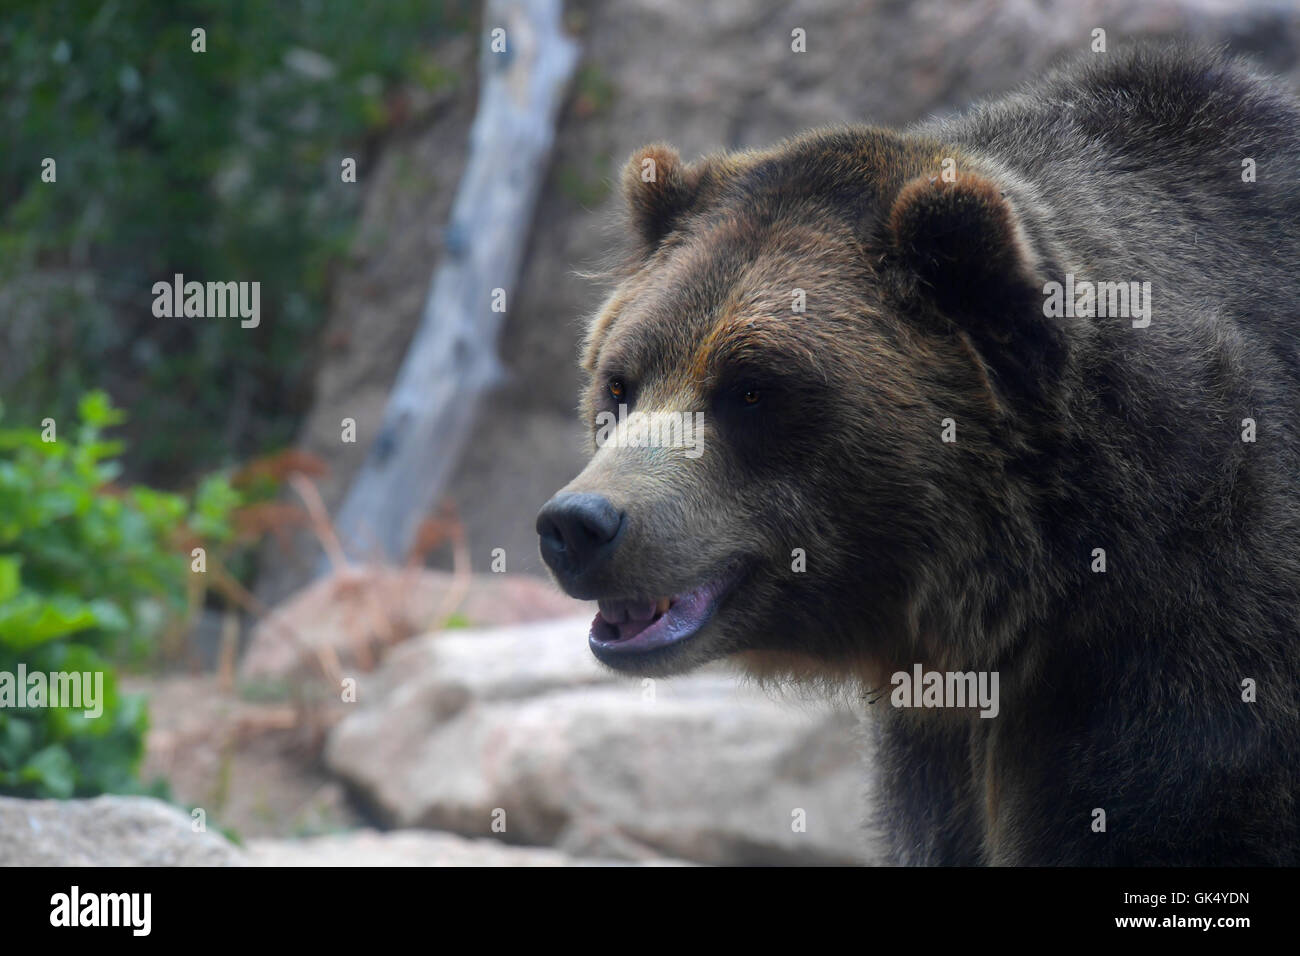 Kopf des Grizzly Bären in ihrer natürlichen Umgebung Stockfoto